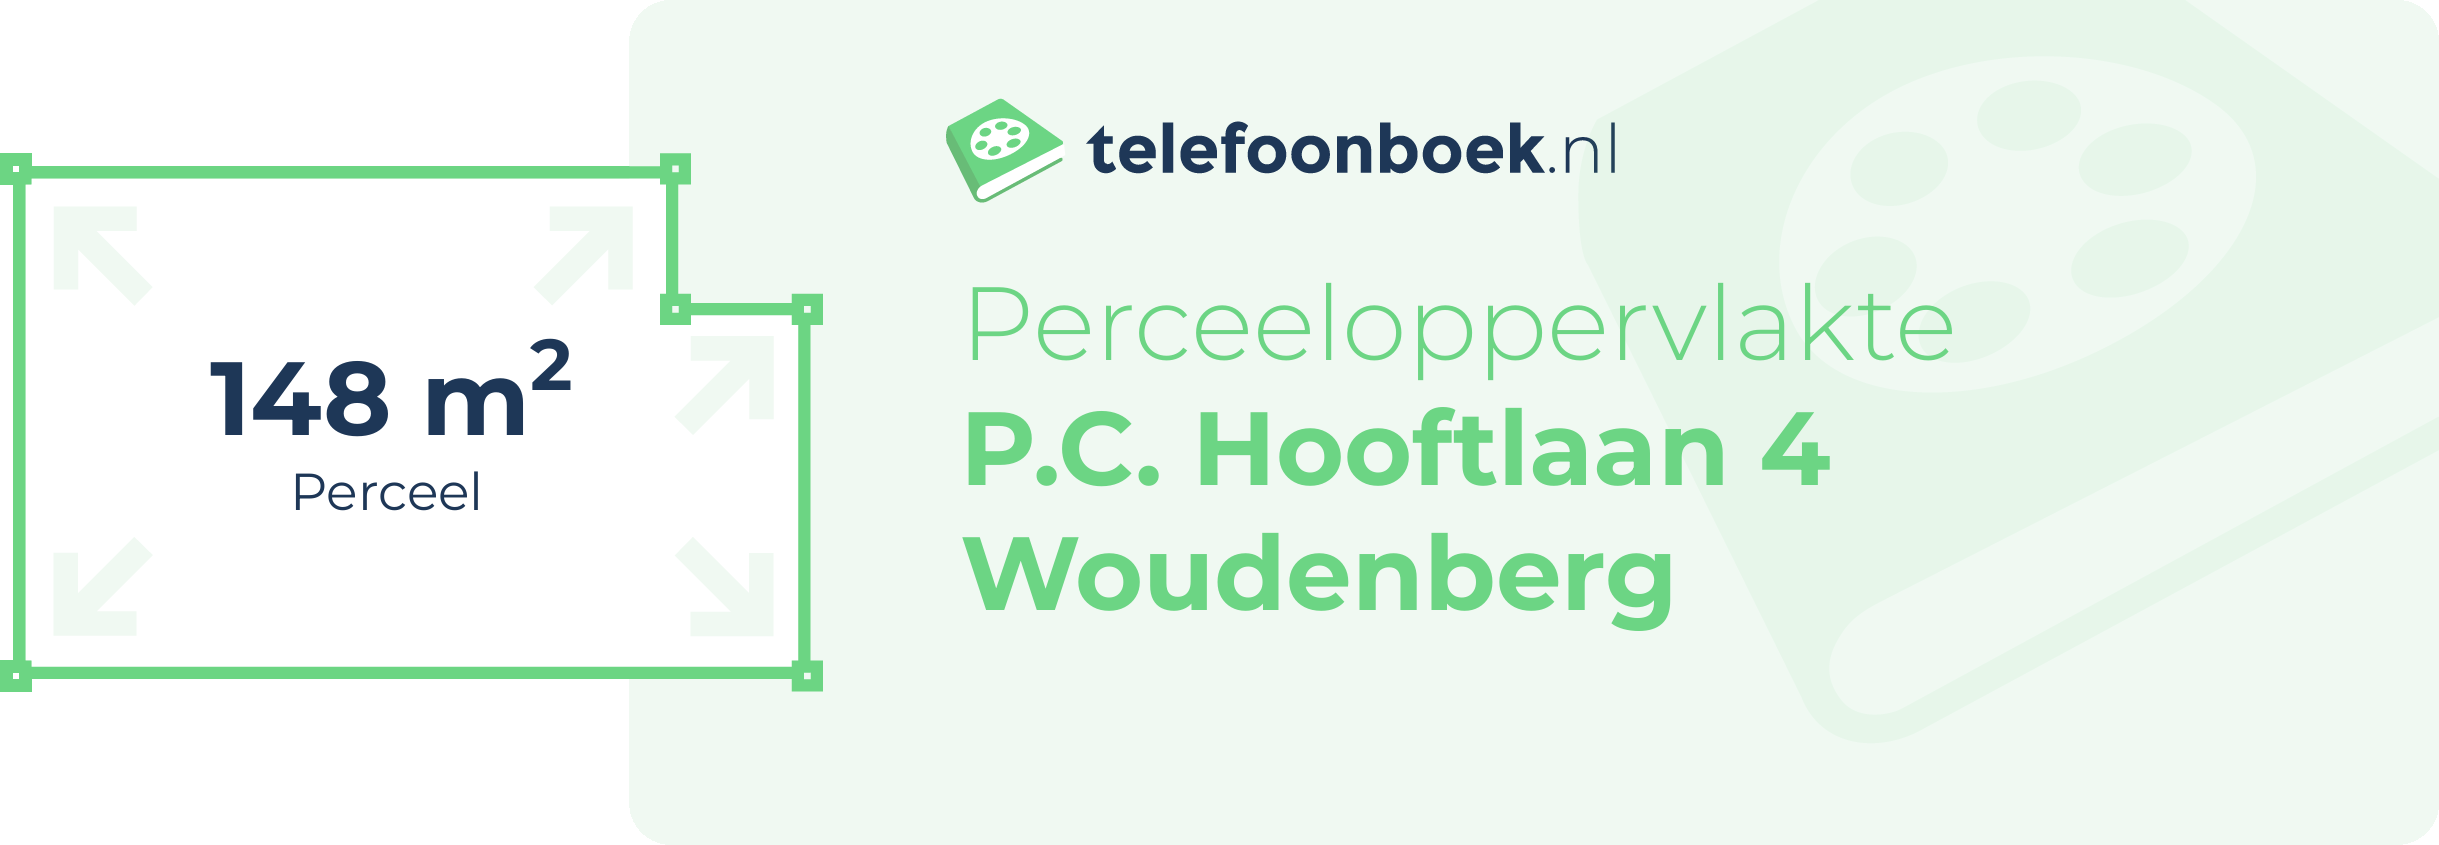 Perceeloppervlakte P.C. Hooftlaan 4 Woudenberg